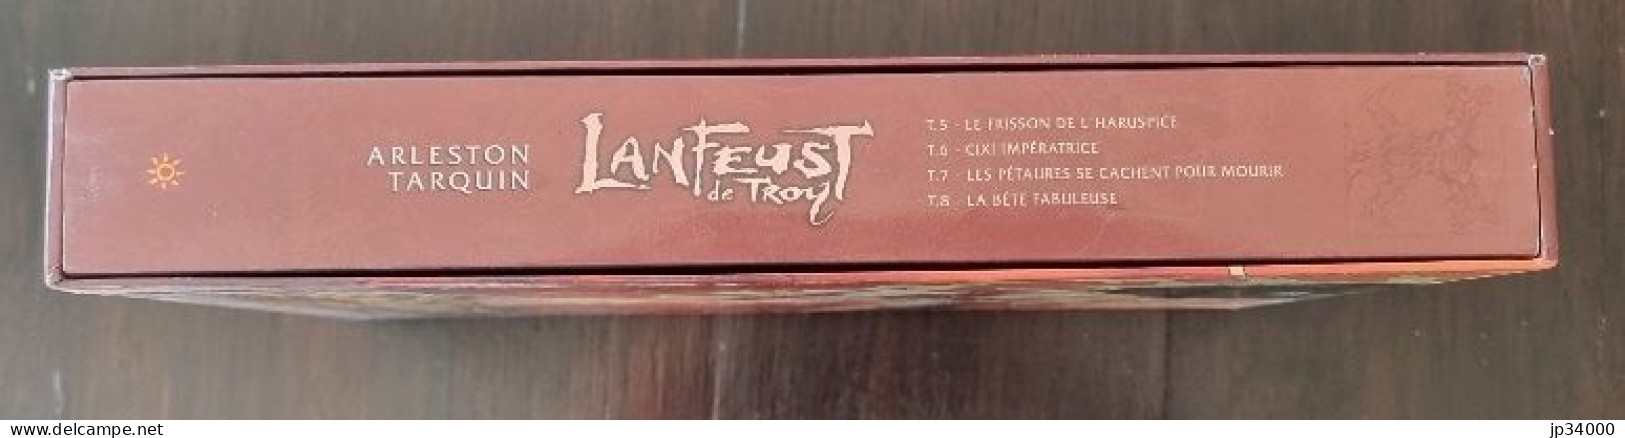 LANFEUST De TROY Intégrale 4 Bd Sous Coffret (5+6+7+8) Ed. Soleil 2003+Ex Libris - Lanfeust De Troy